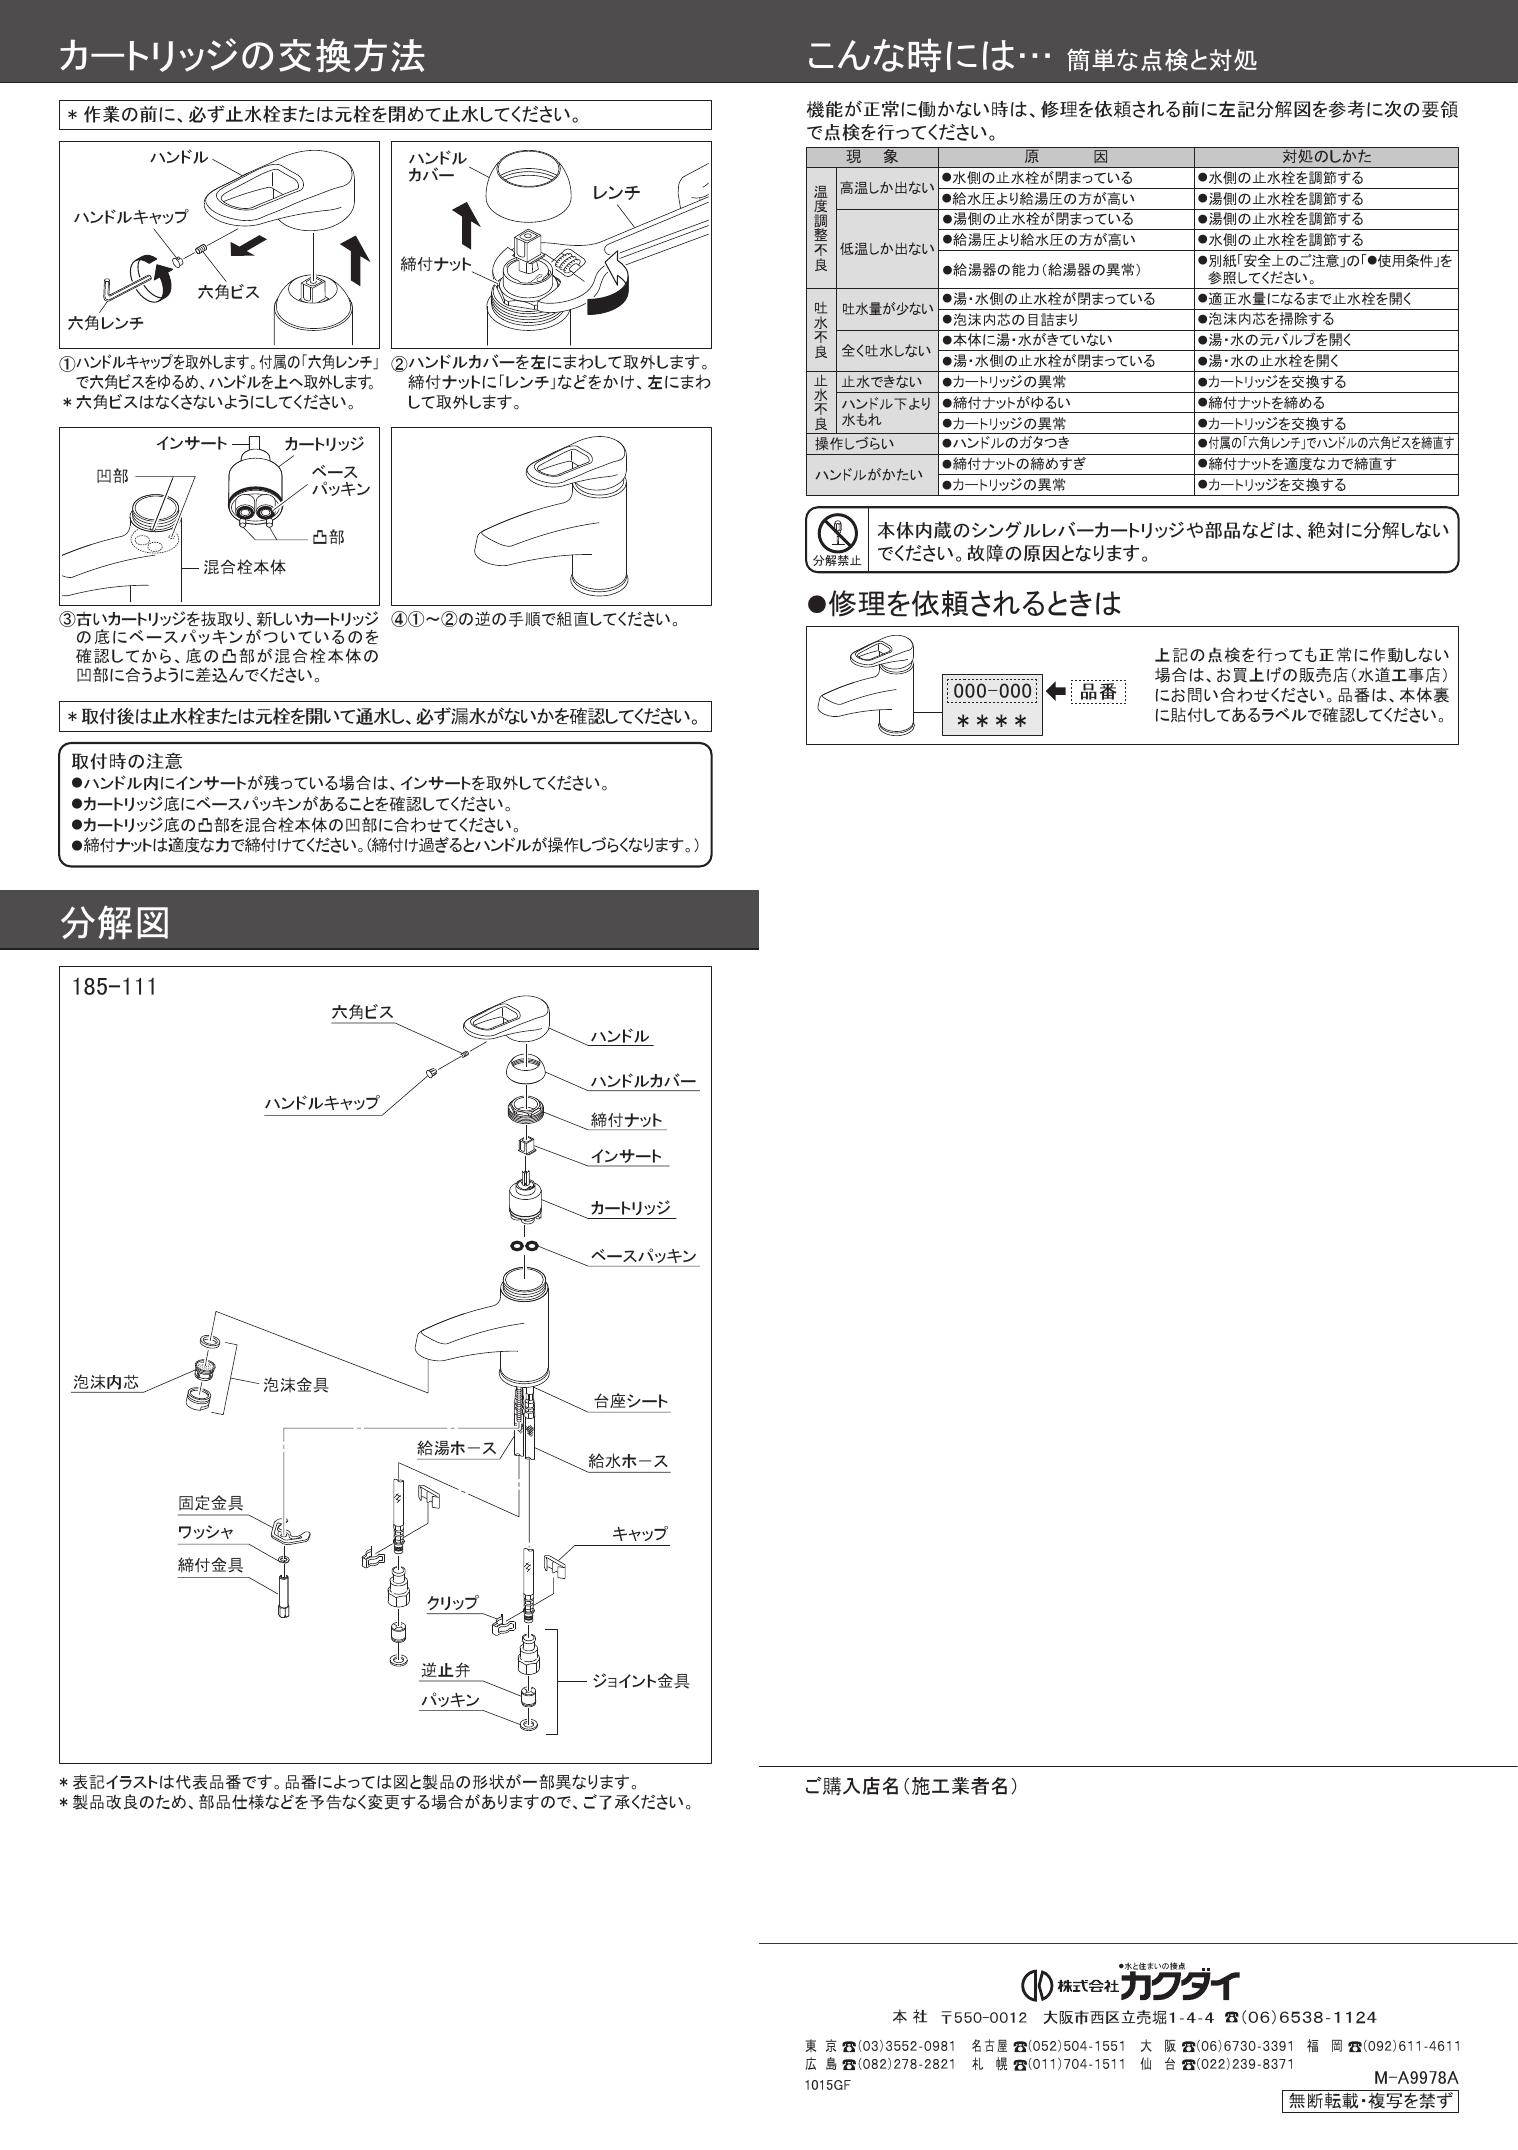 限​定​販​売​】 カクダイ KAKUDAI 185-204K シングルレバー混合栓